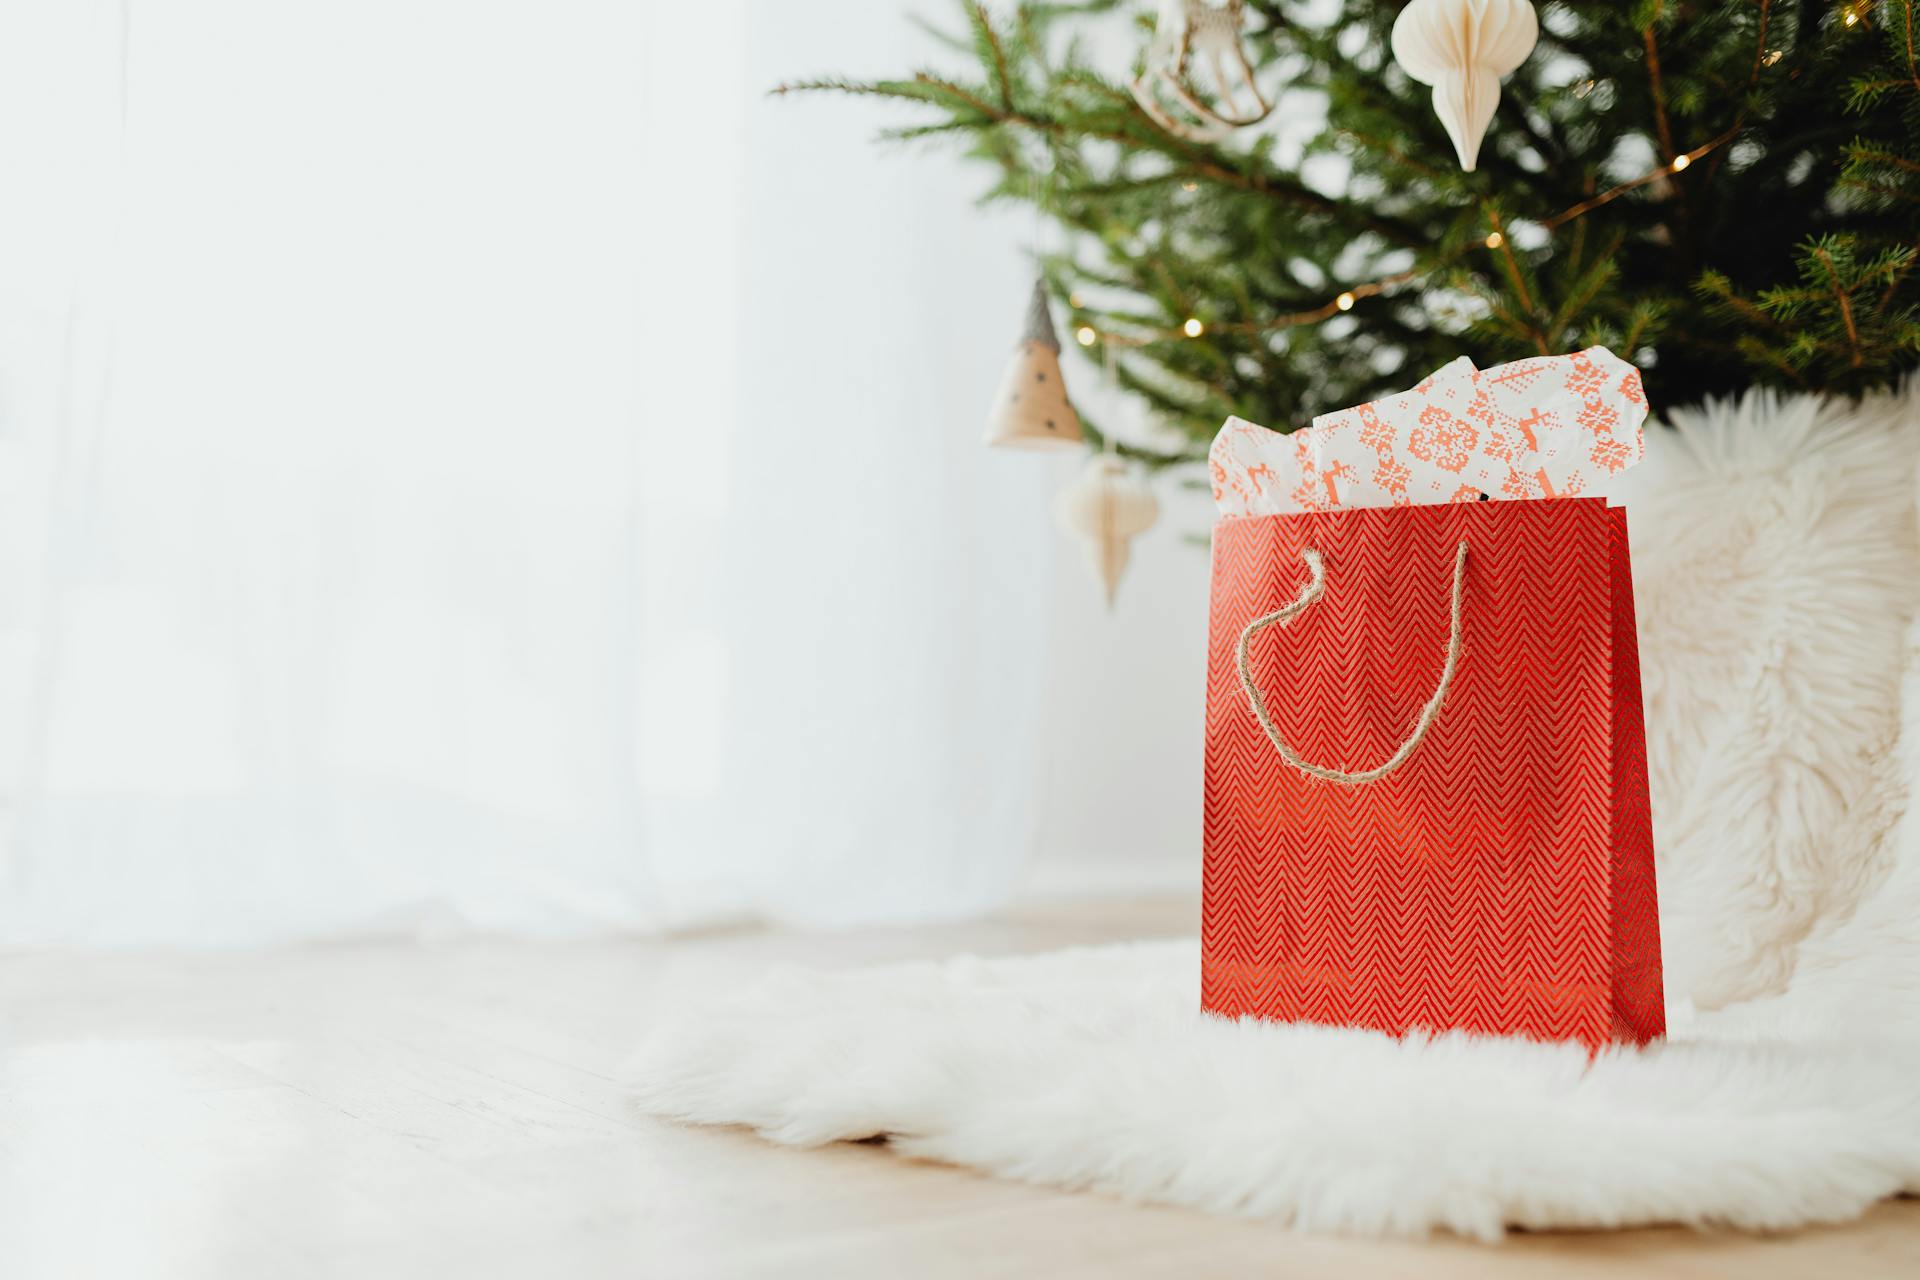 Eine rote Geschenktüte, die auf einem weißen Pelzteppich liegt | Quelle: Pexels